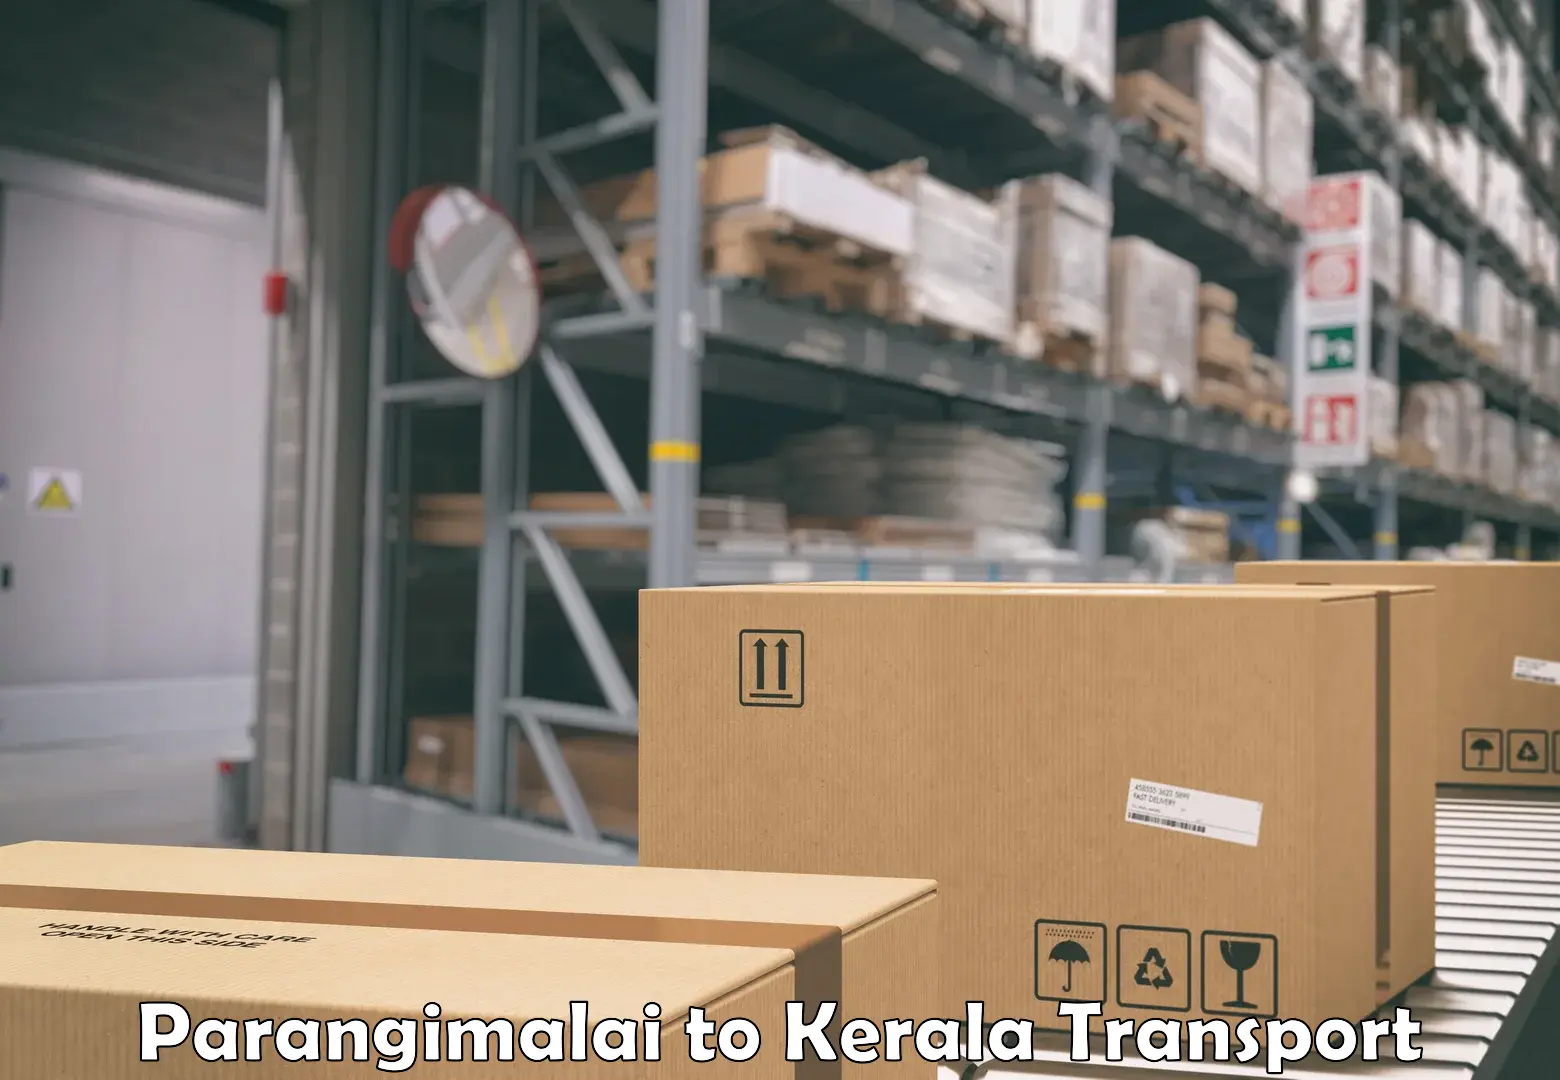 Road transport services Parangimalai to Kerala